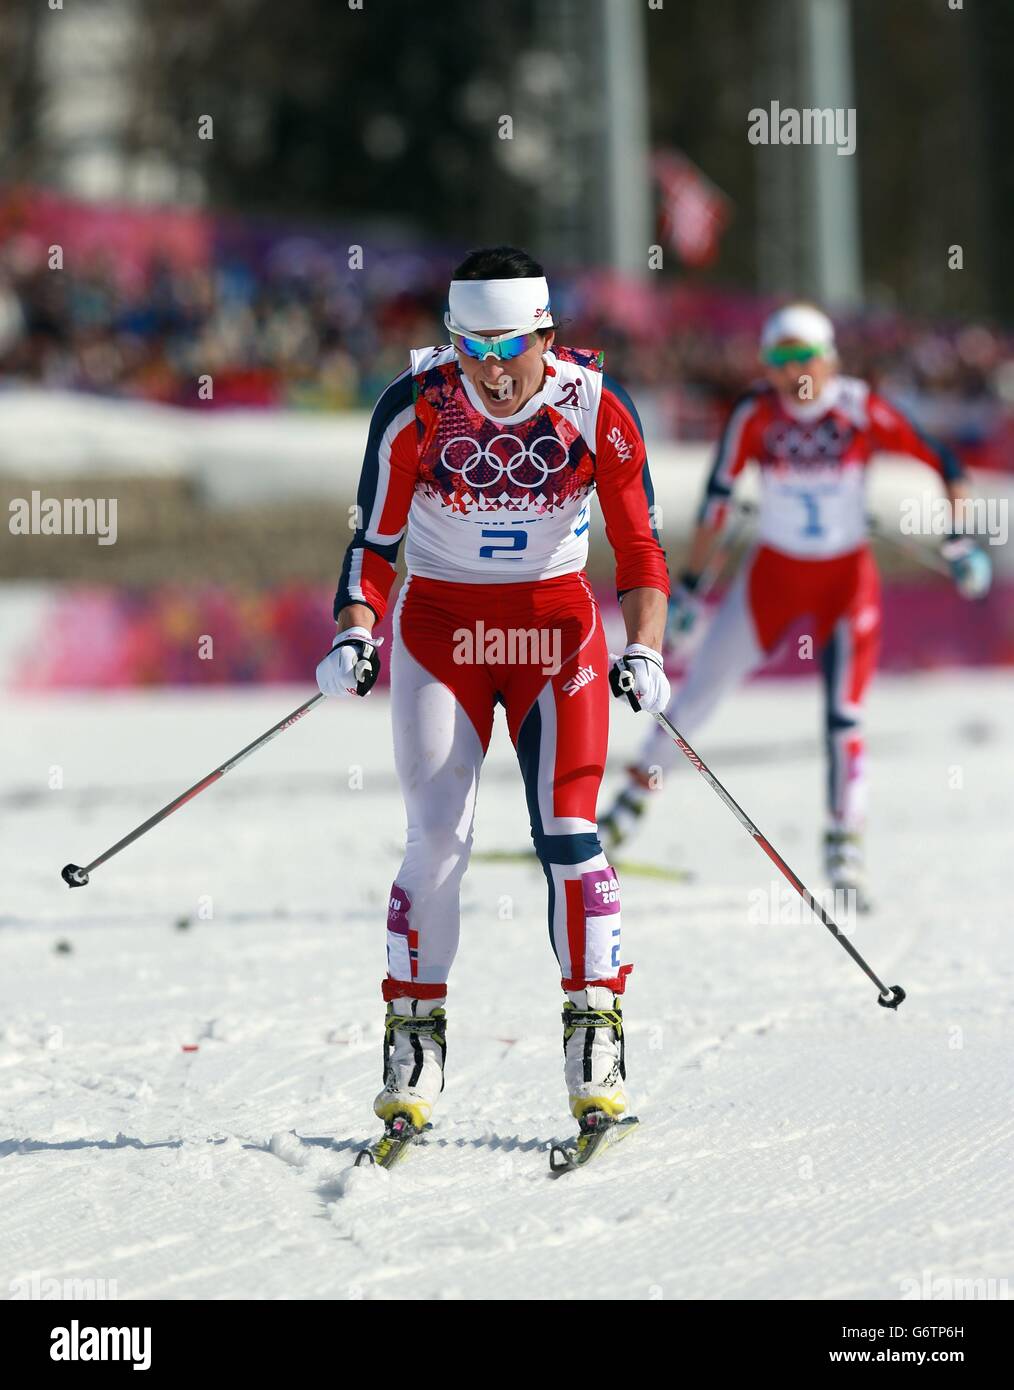 Olympische Winterspiele In Sotschi - Tag 15. Die norwegische Marit Bjoergen feiert den 30-km-Sieg der Damen bei den Olympischen Spielen in Sotschi 2014 in Sotschi, Russland. Stockfoto